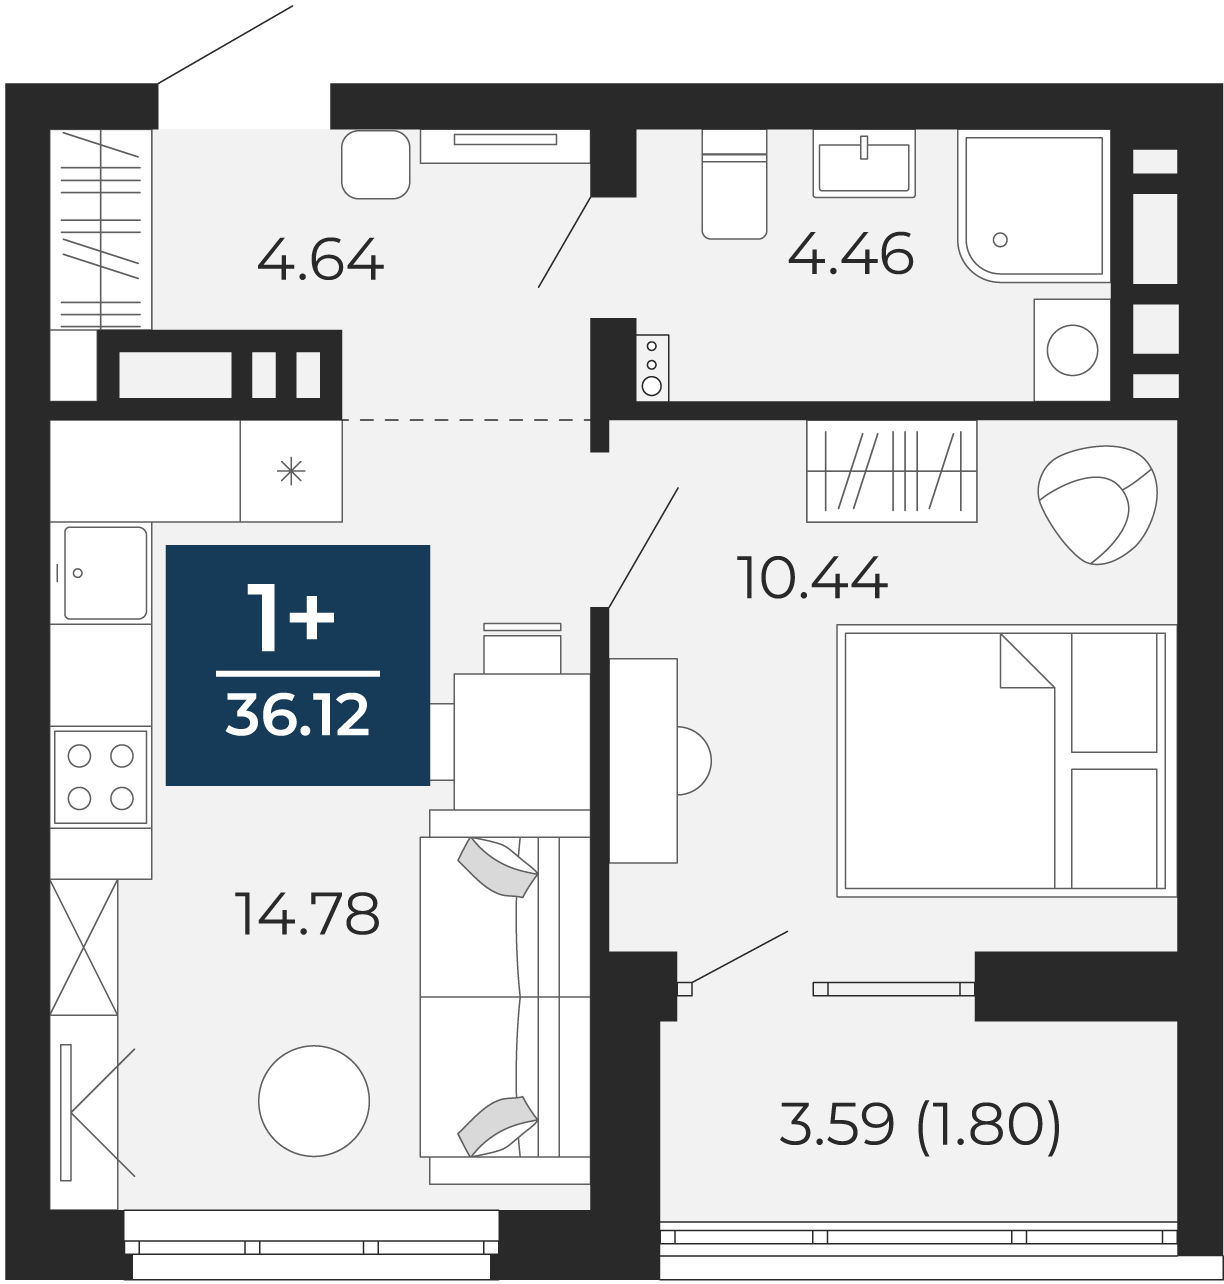 Квартира № 249, 1-комнатная, 36.12 кв. м, 14 этаж